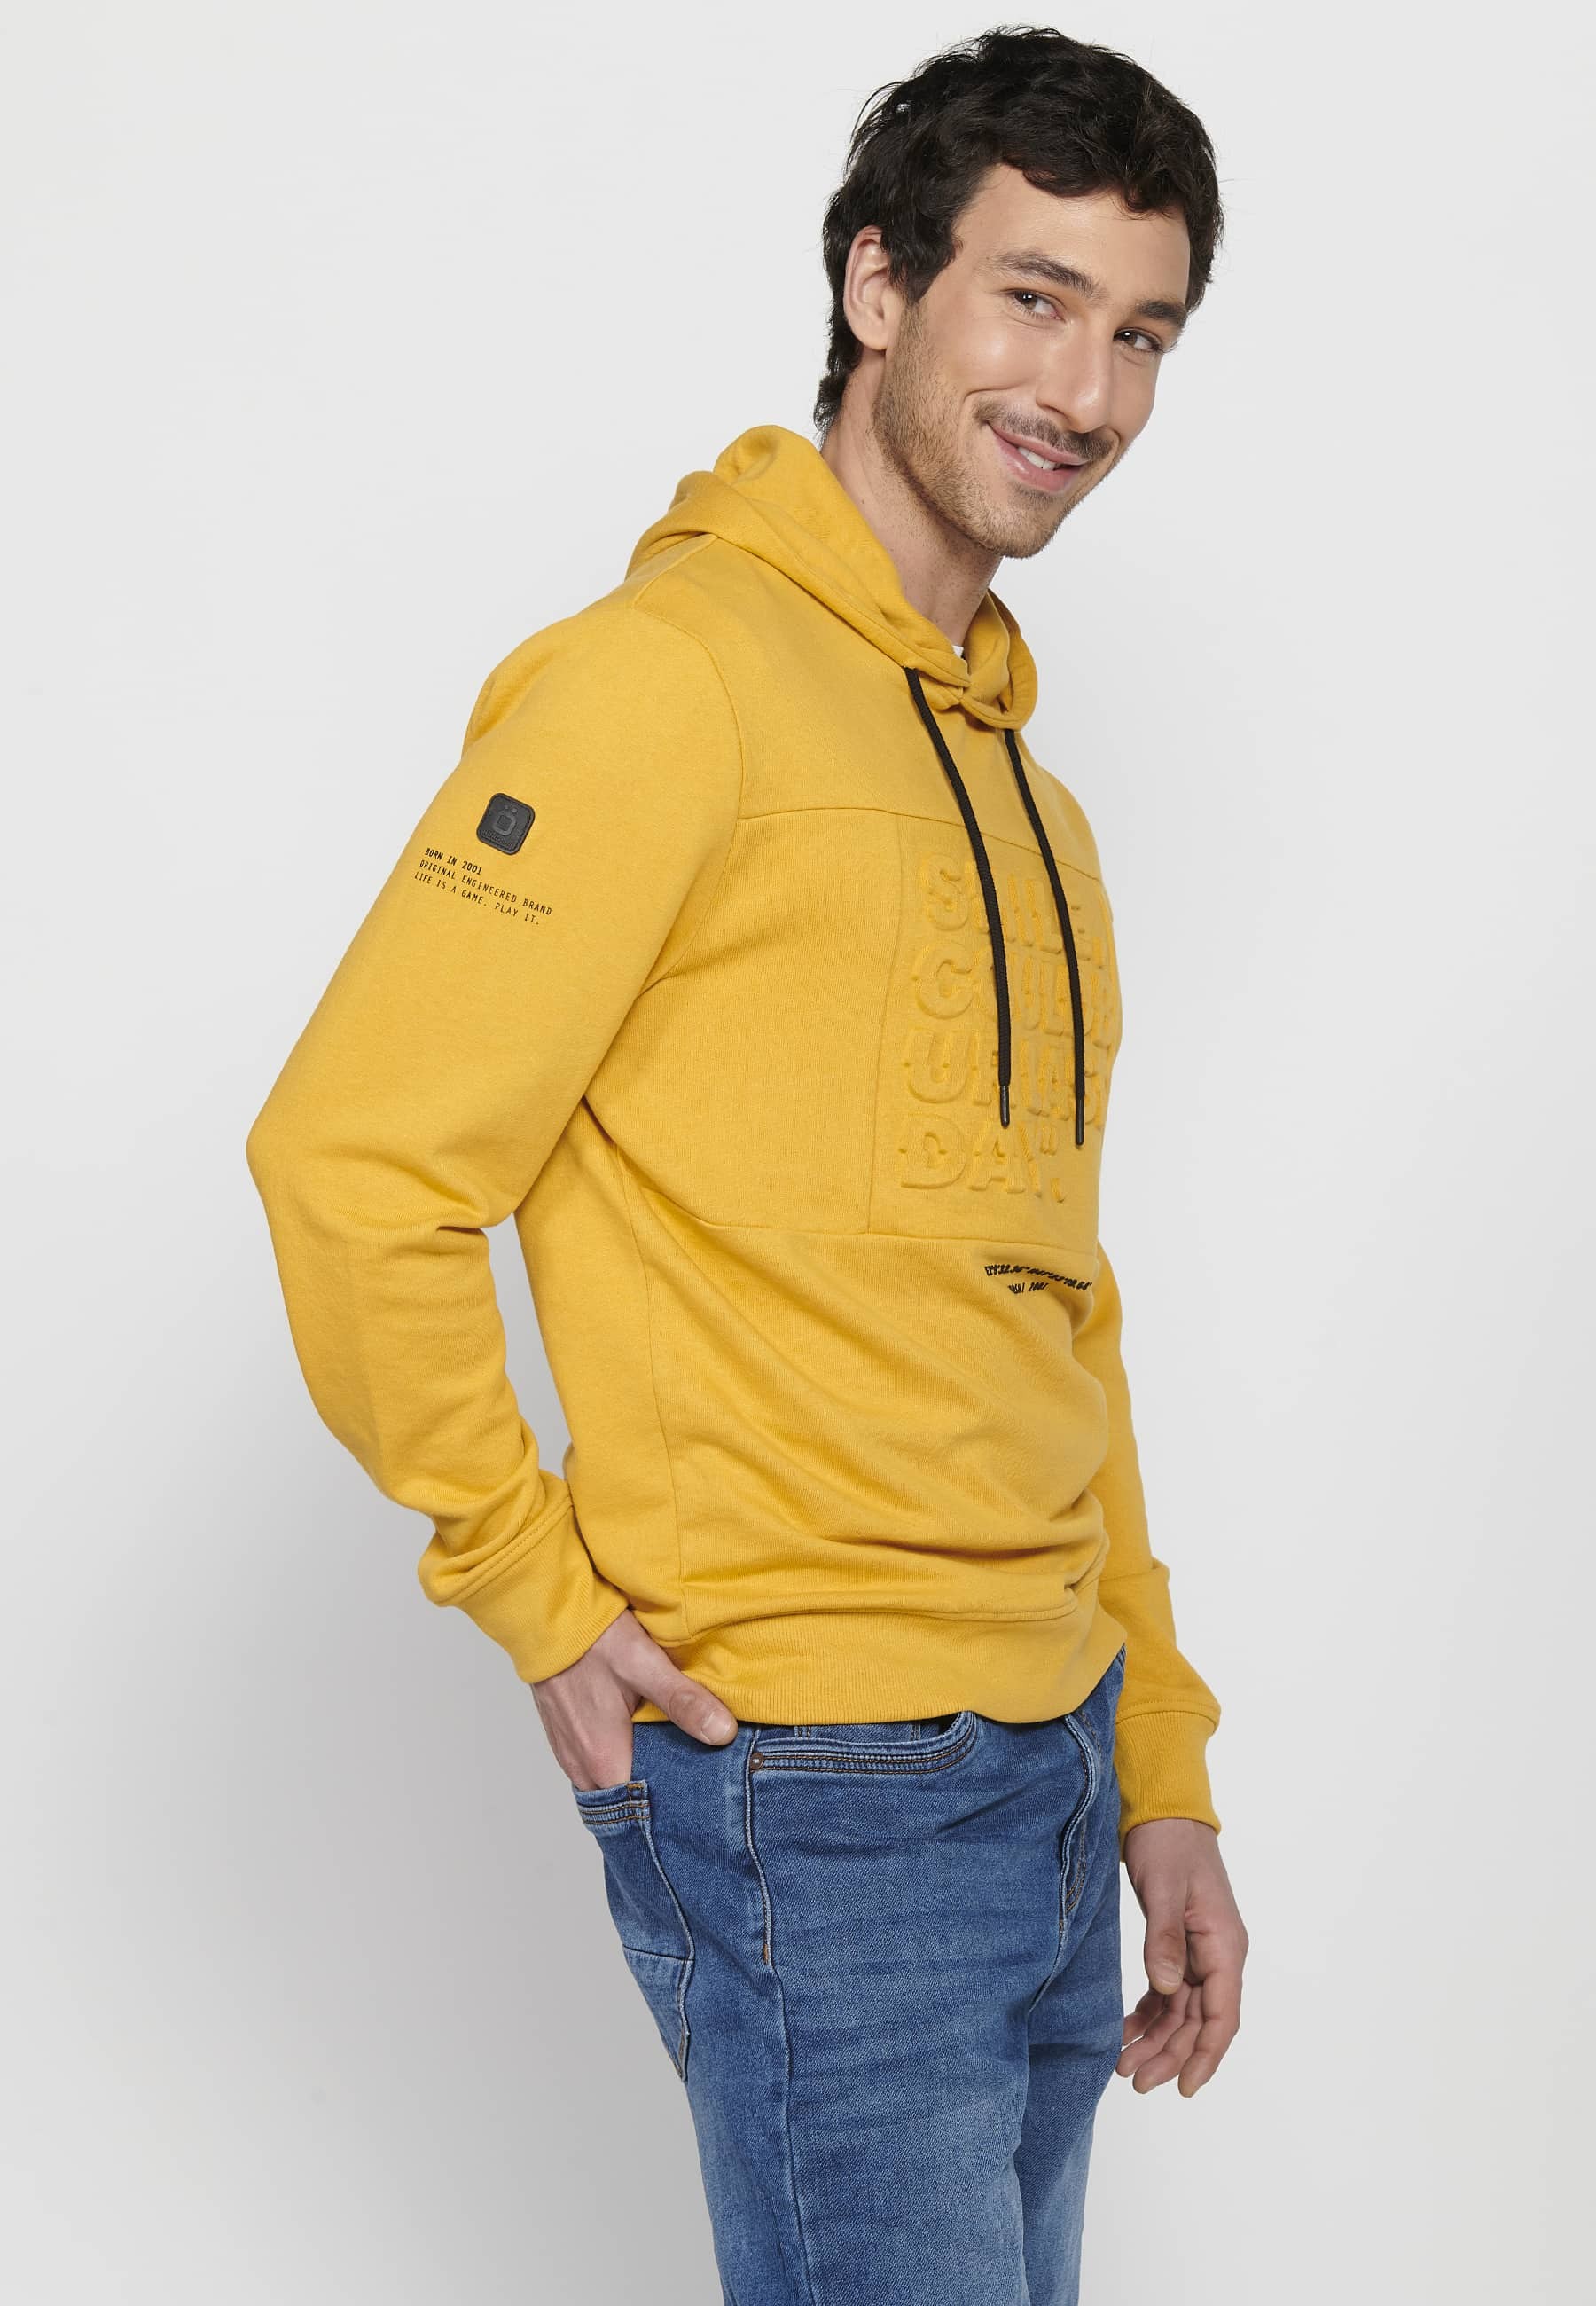 Langärmliges Sweatshirt mit gerippten Abschlüssen und Kapuzenkragen mit geprägten Buchstaben auf der Vorderseite in Gelb für Herren 7